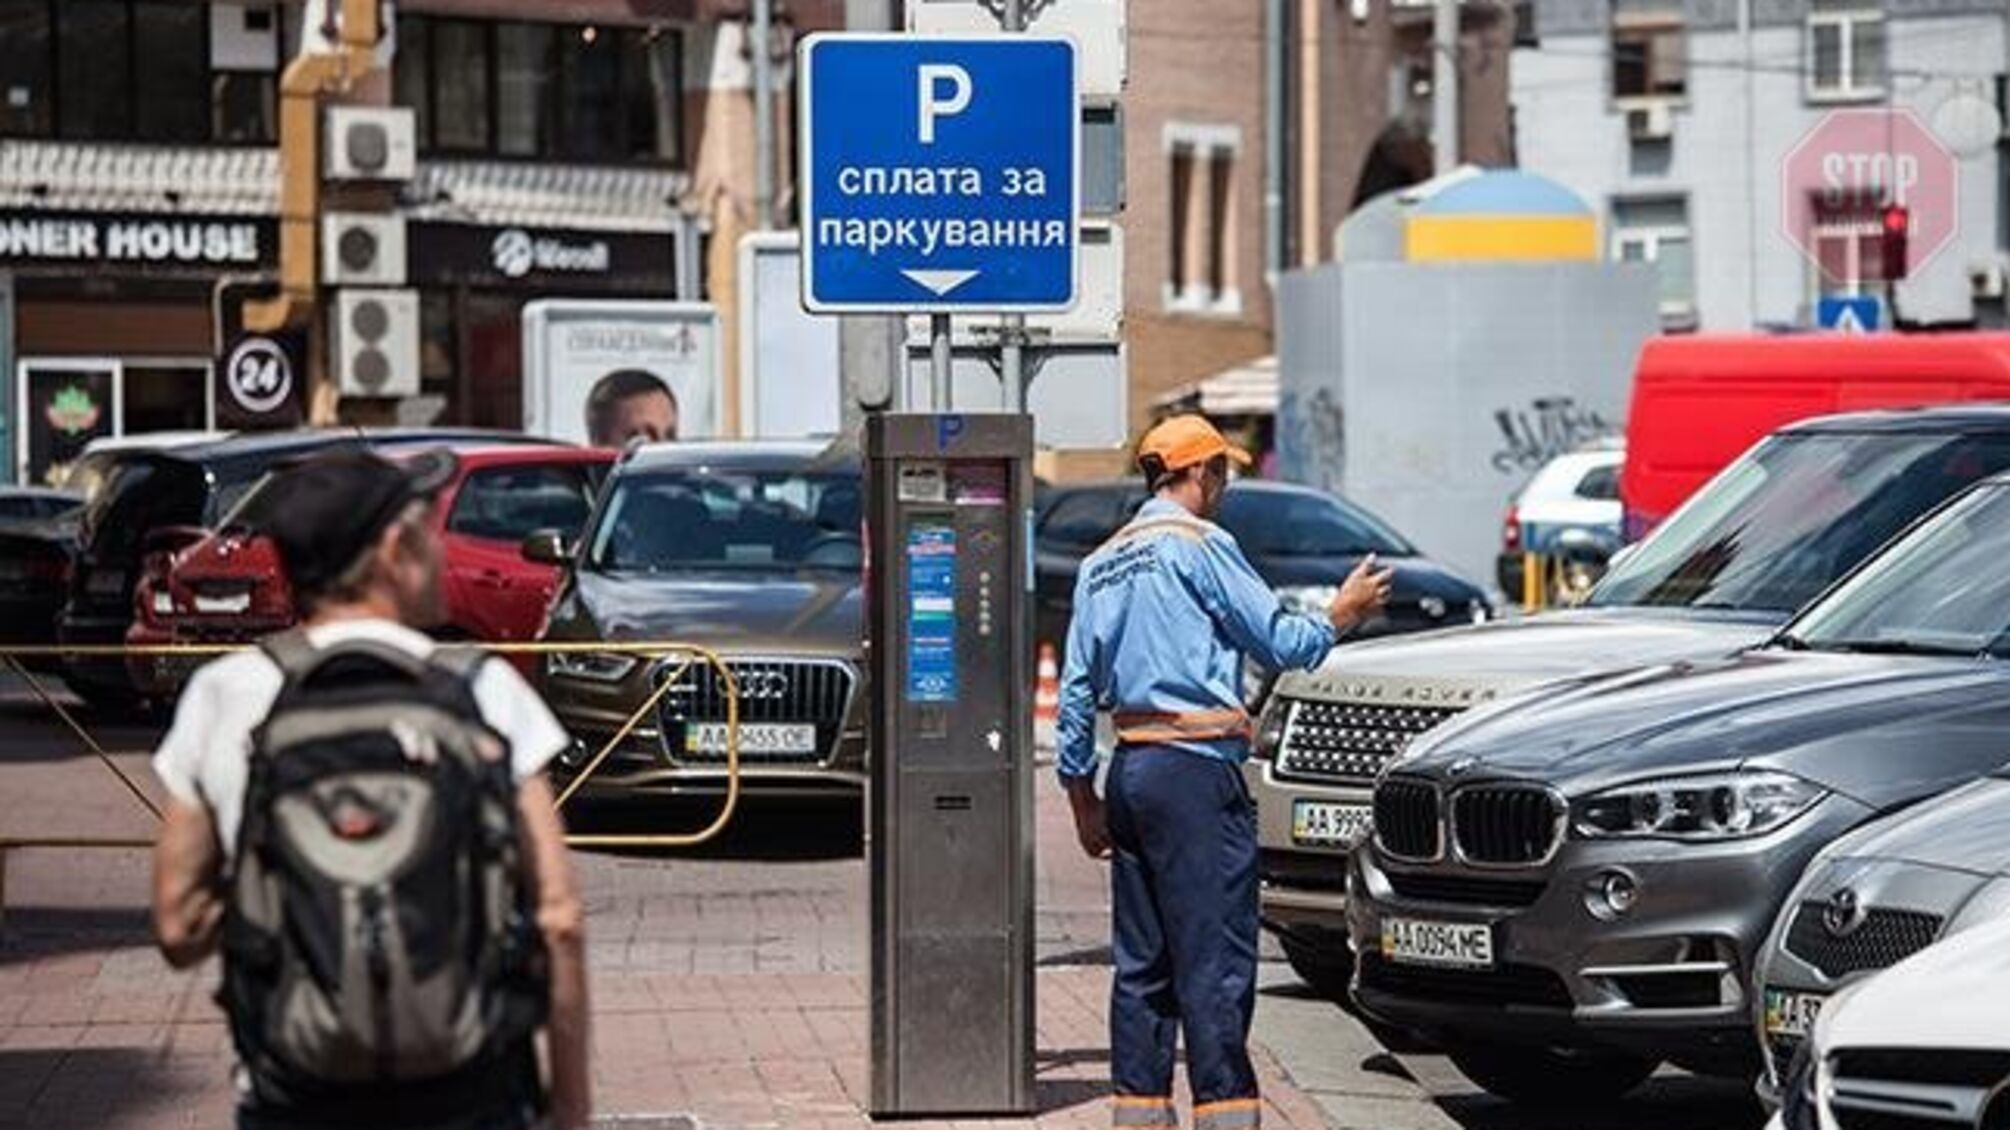 Стоимость парковки в Киеве может взлететь в 3,5 раза